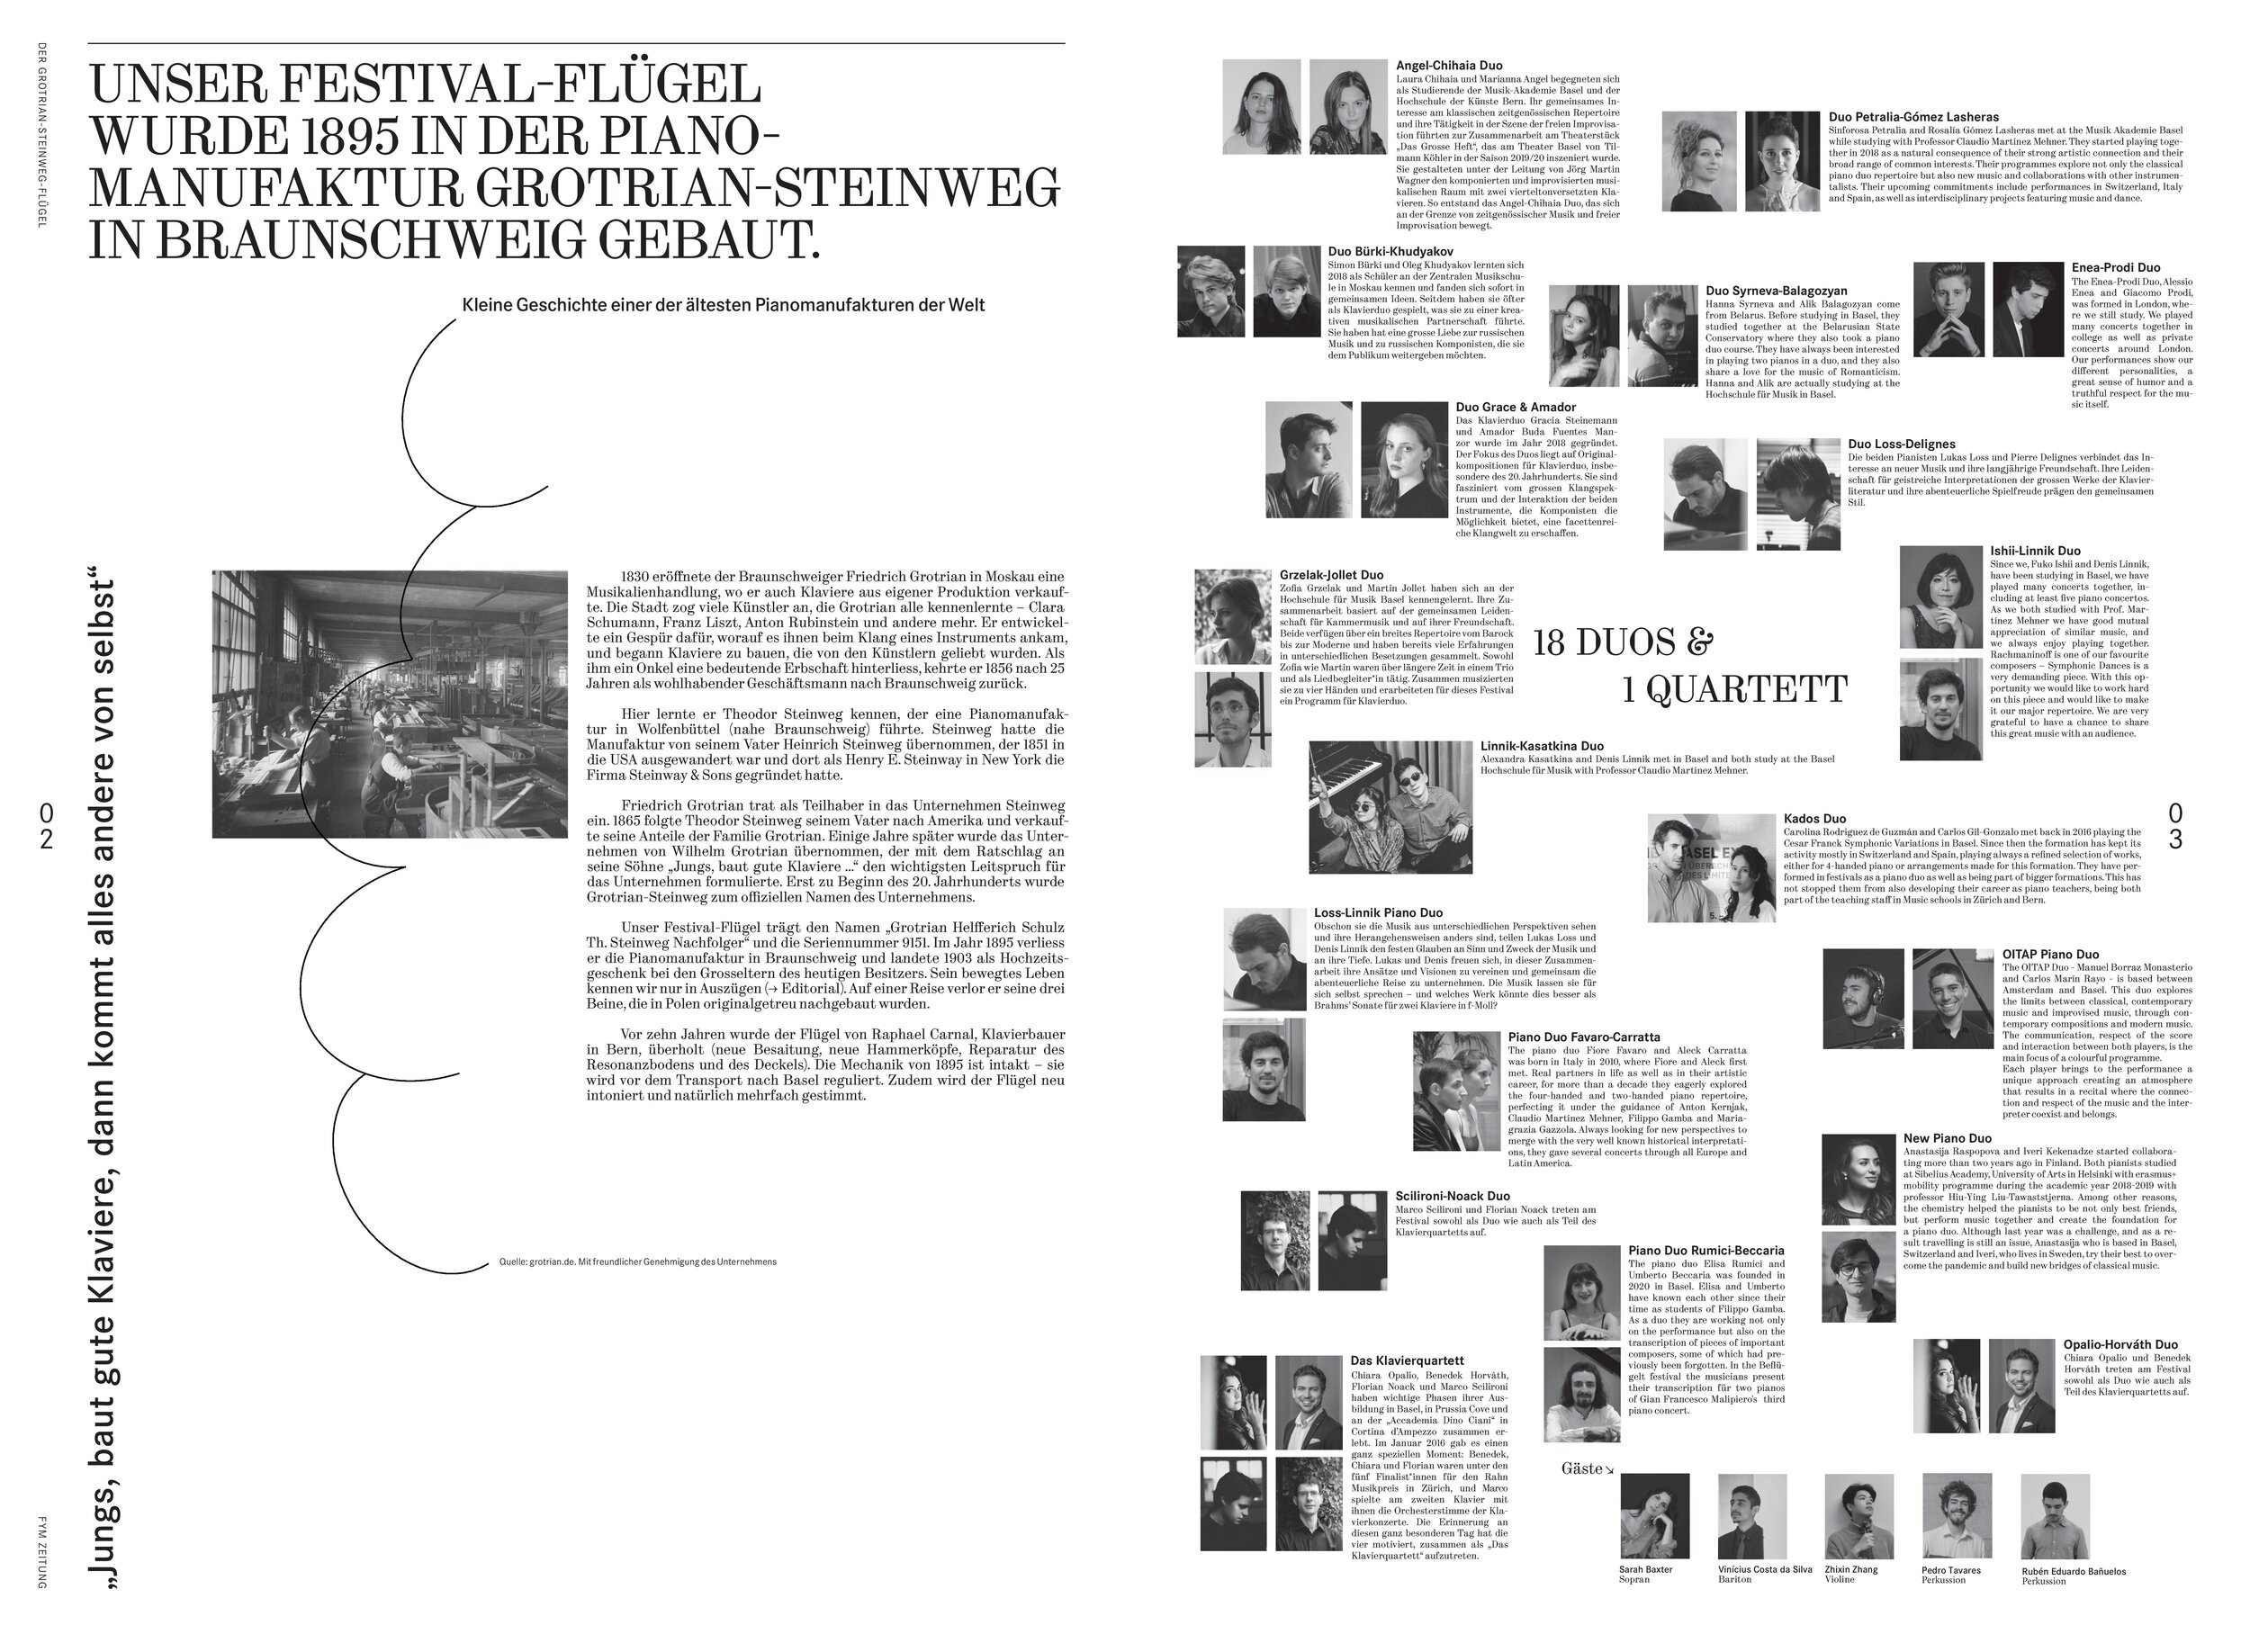 FYM Zeitung No2 Beflügelt - EinFestival für zwei Klaviere-page-002.jpg